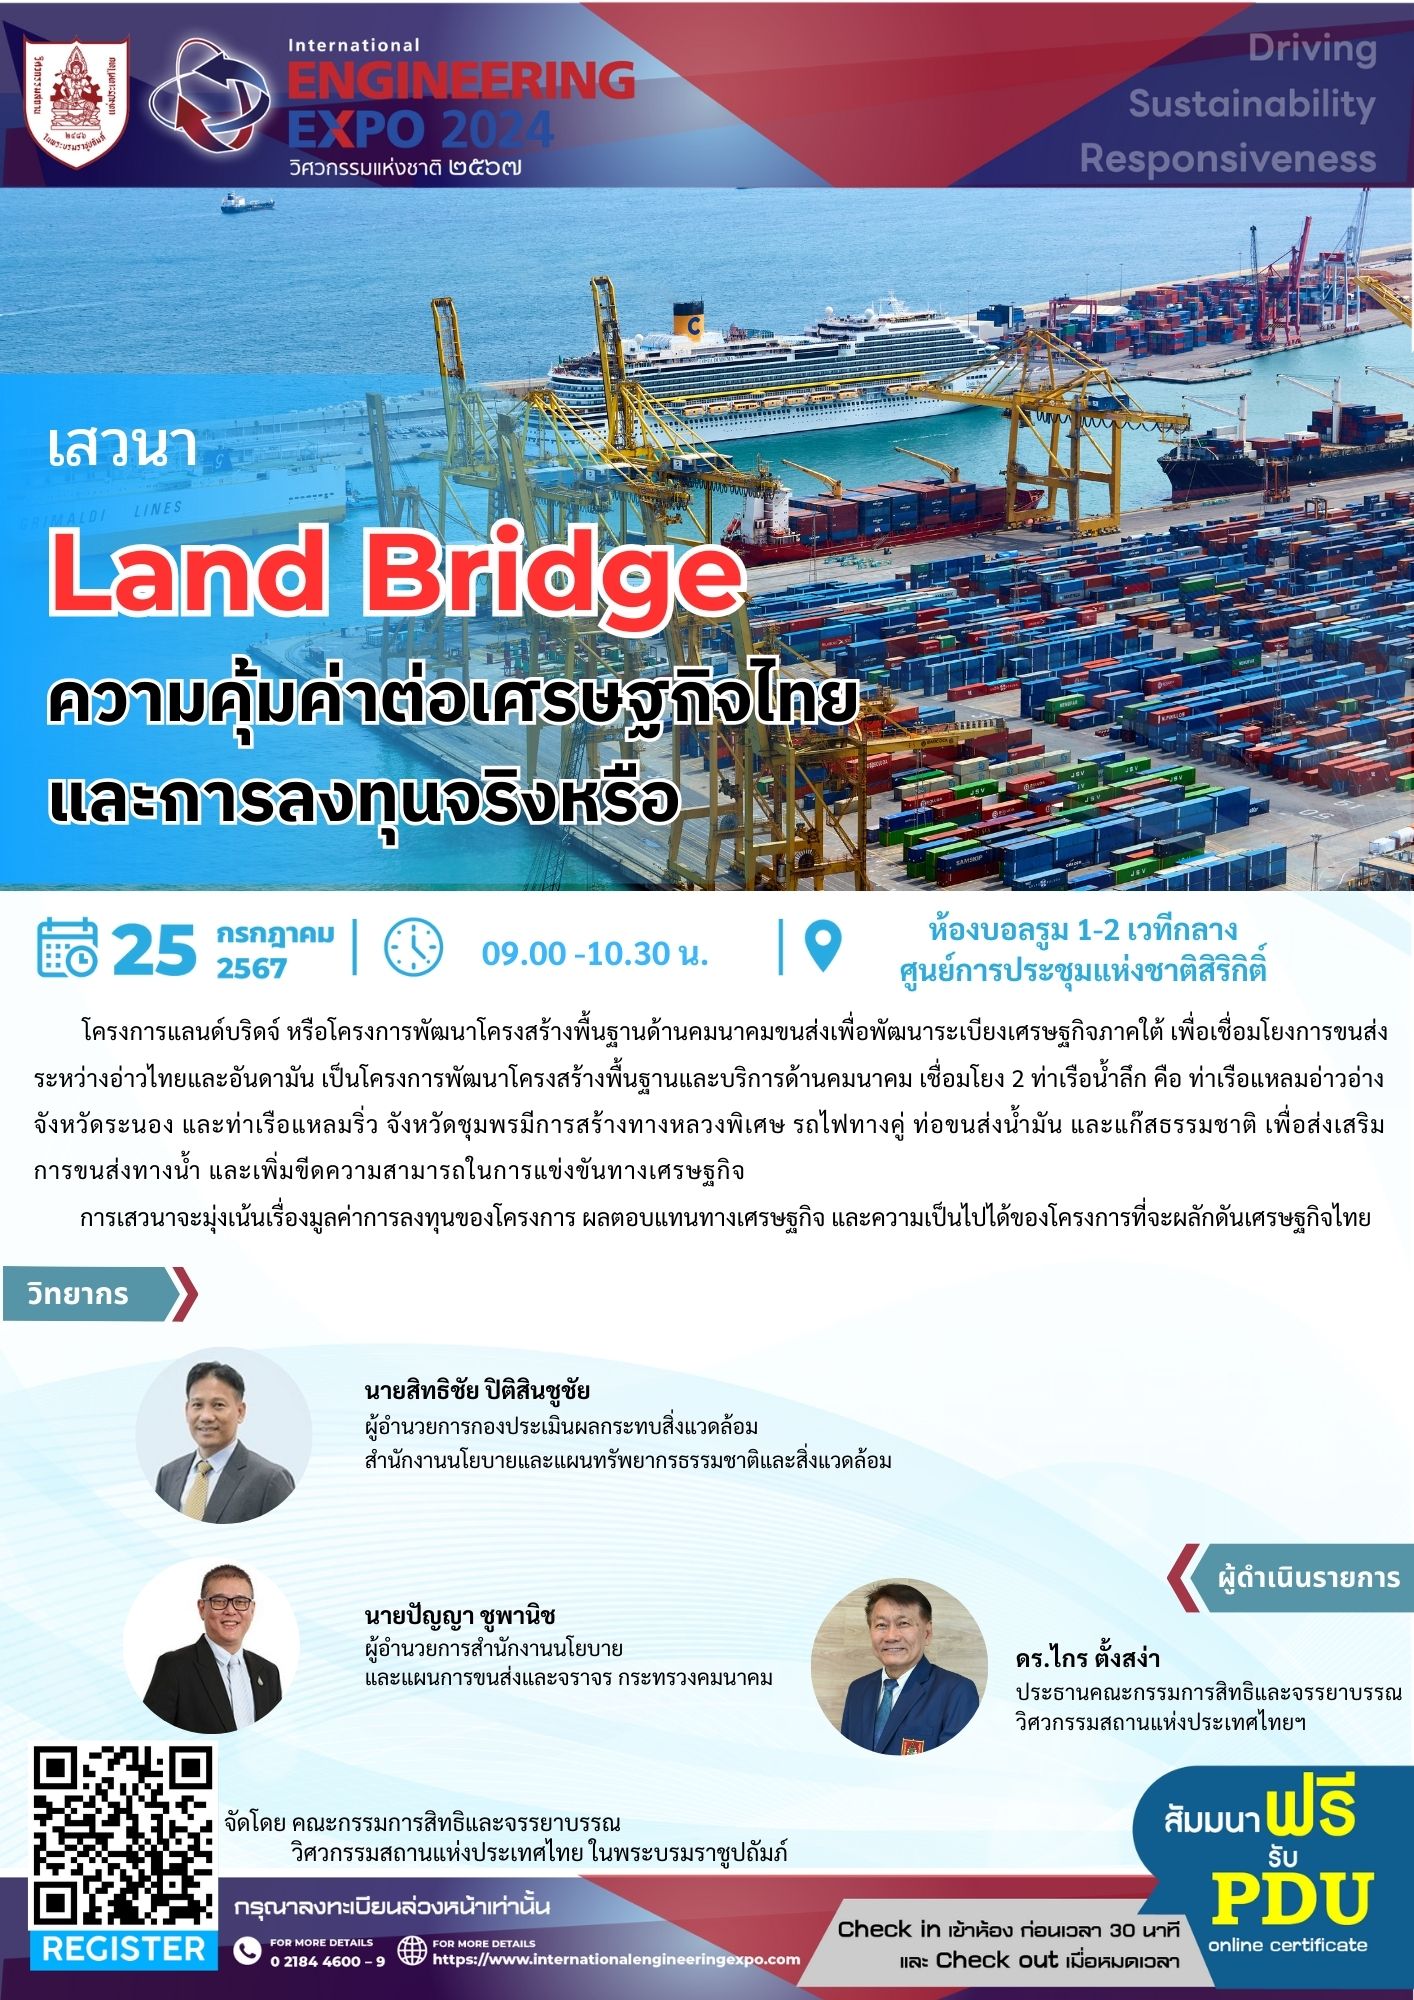 เสวนา Land Bridge ความคุ้มค่าต่อเศรษฐกิจไทย และการลงทุนจริงหรือ